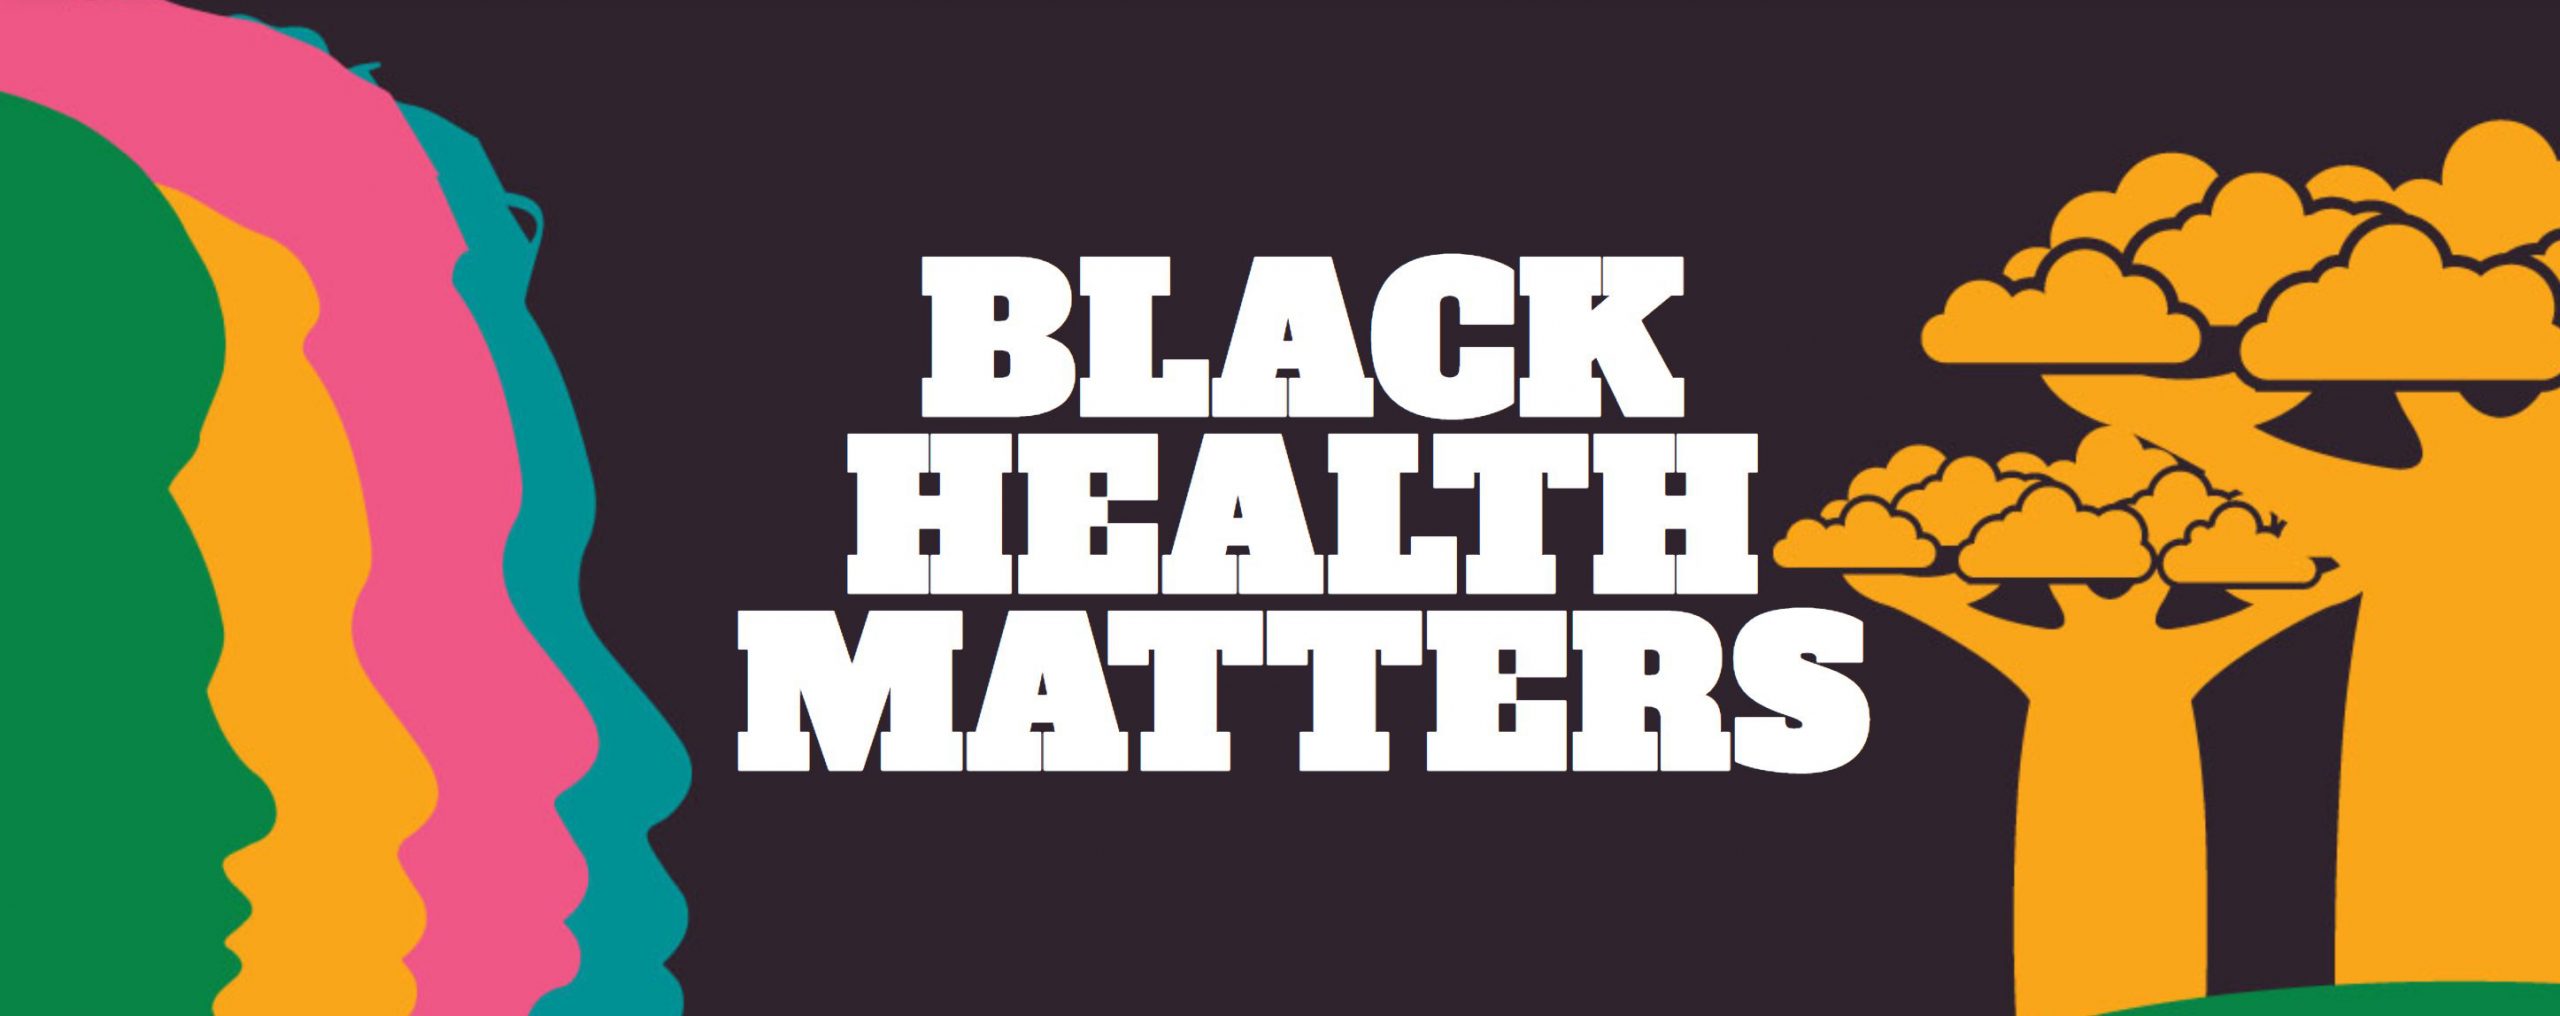 Black Mental Health Week Children's Mental Health Ontario